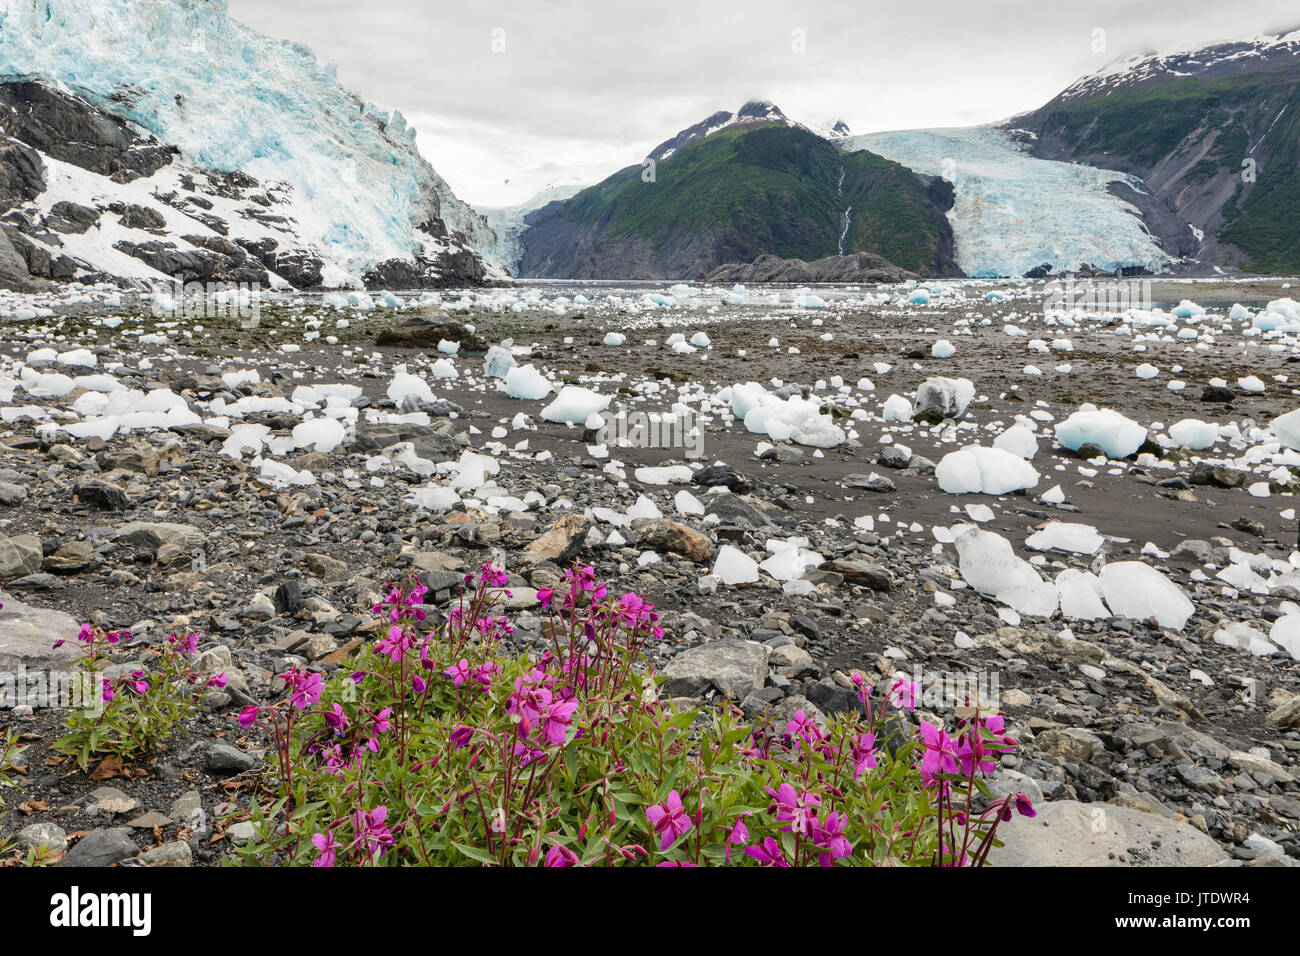 Zwerg Weidenröschen (Epilobium latifolium) kontrastiert mit eisberge von Cascade, Barry, und Coxe Gletscher in Prince William Sound in Southcentral Alaska. Stockfoto